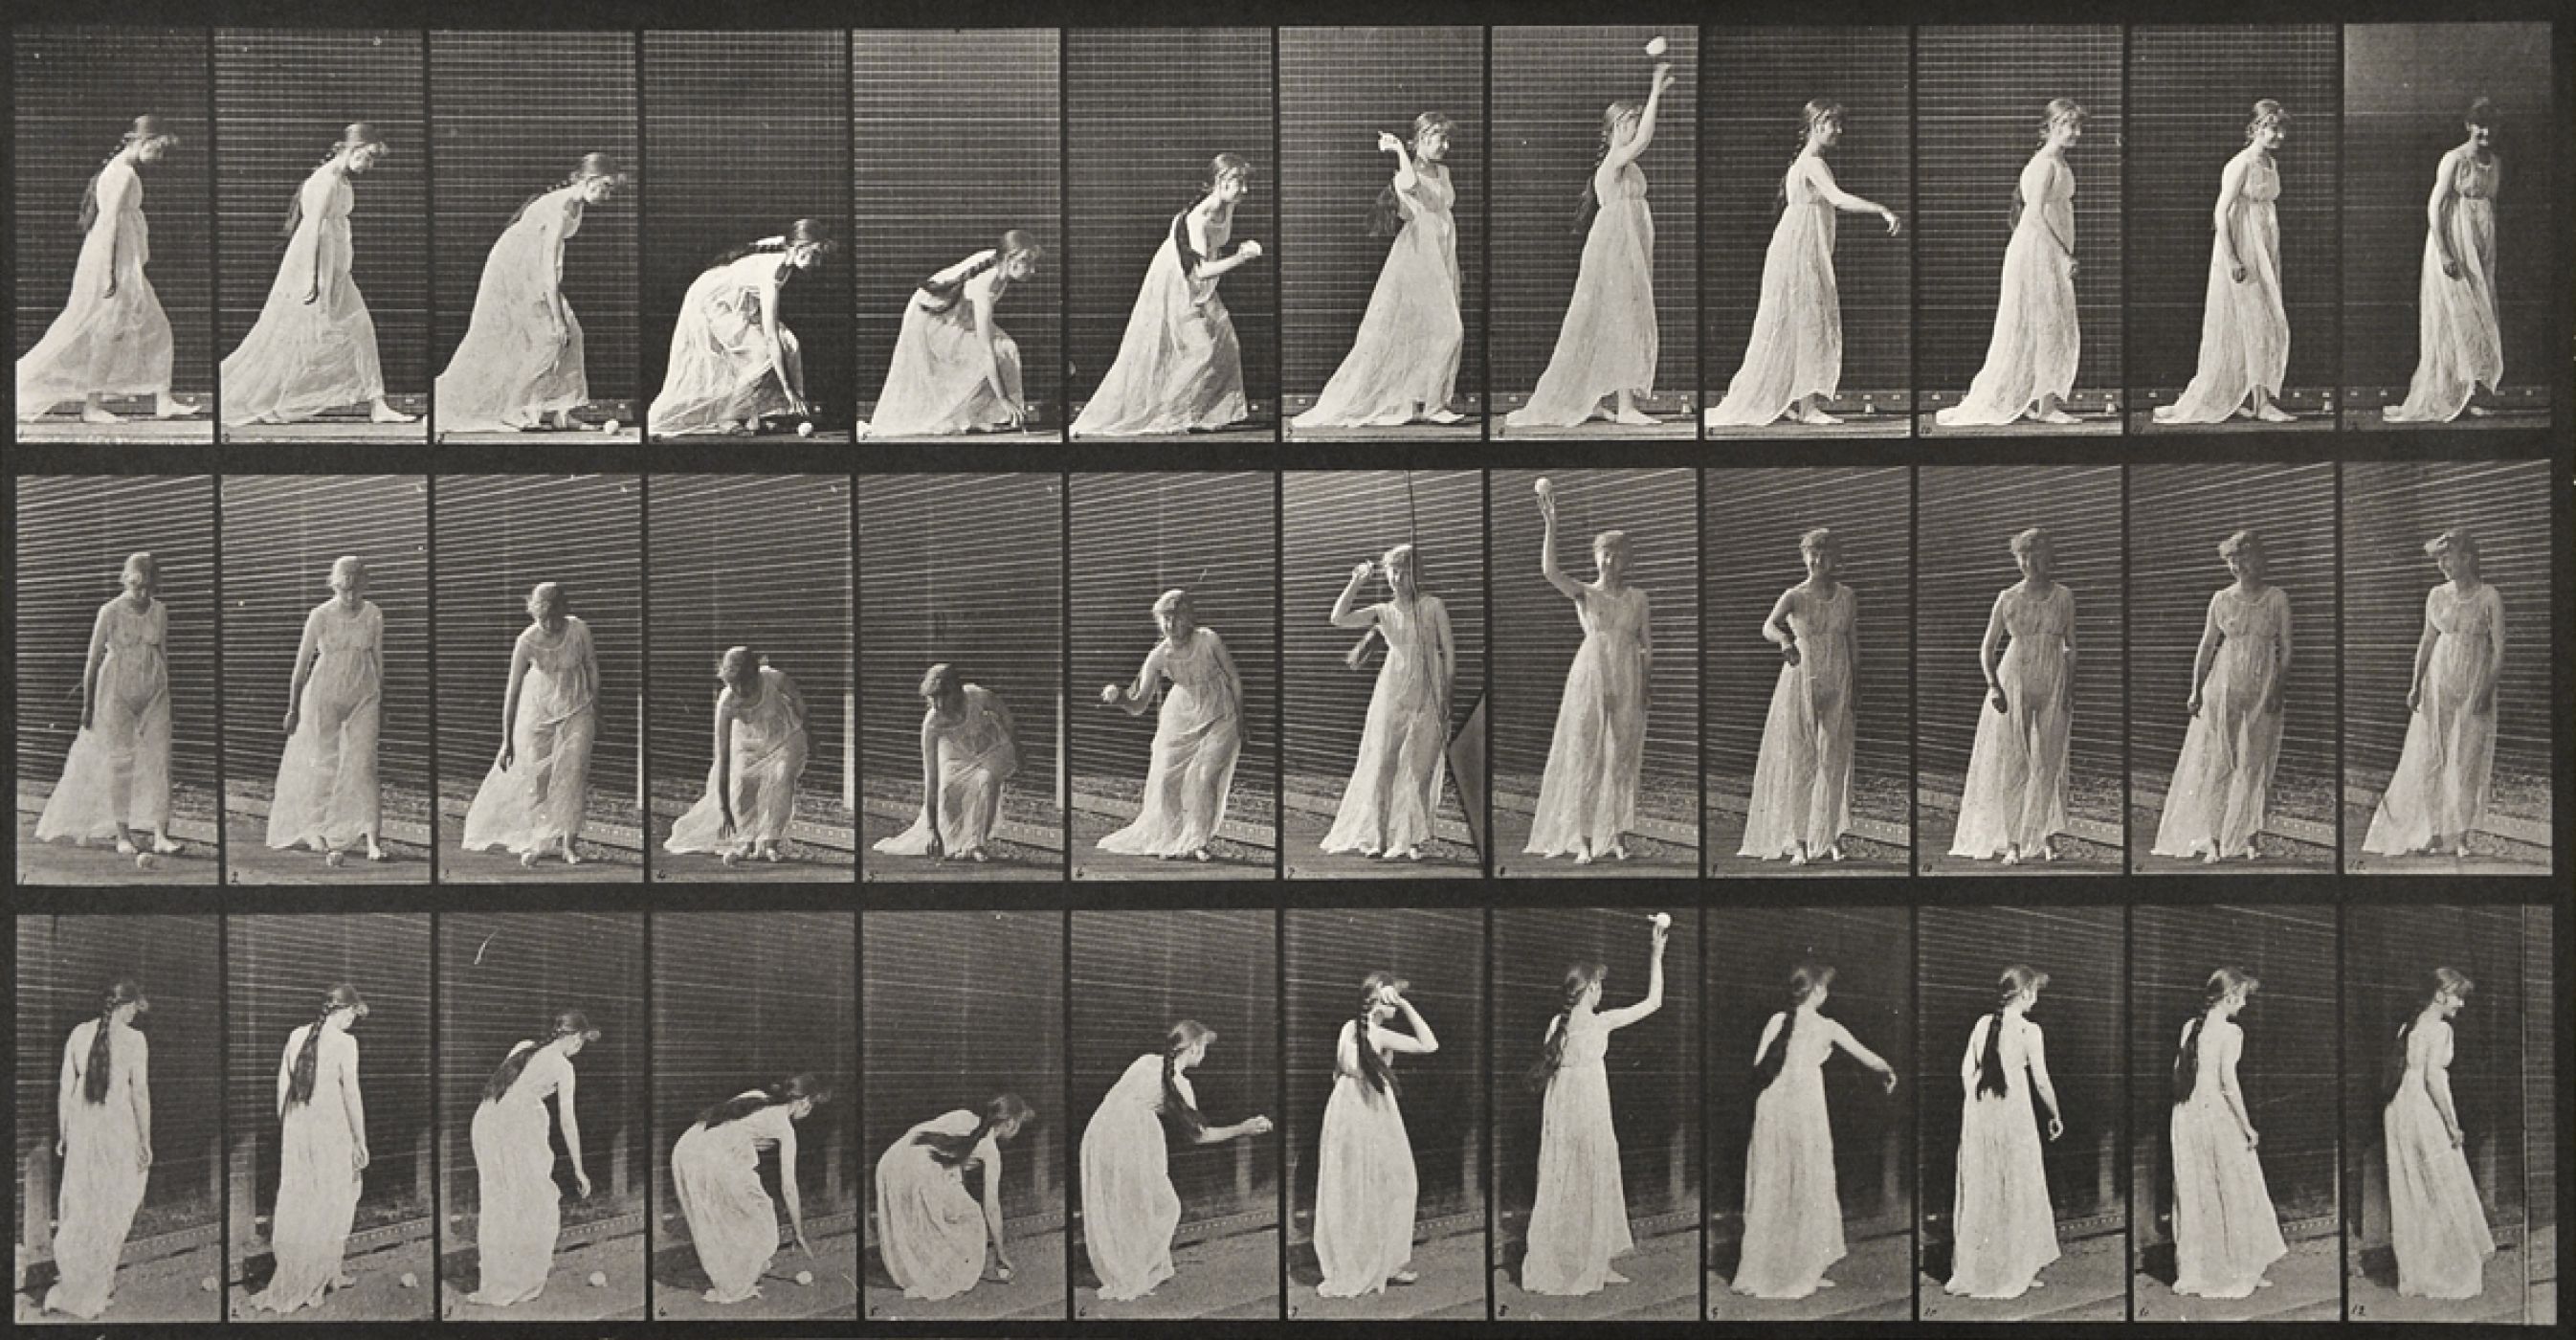 Eadweard Muybridge, “Femme à la balle”, 1887